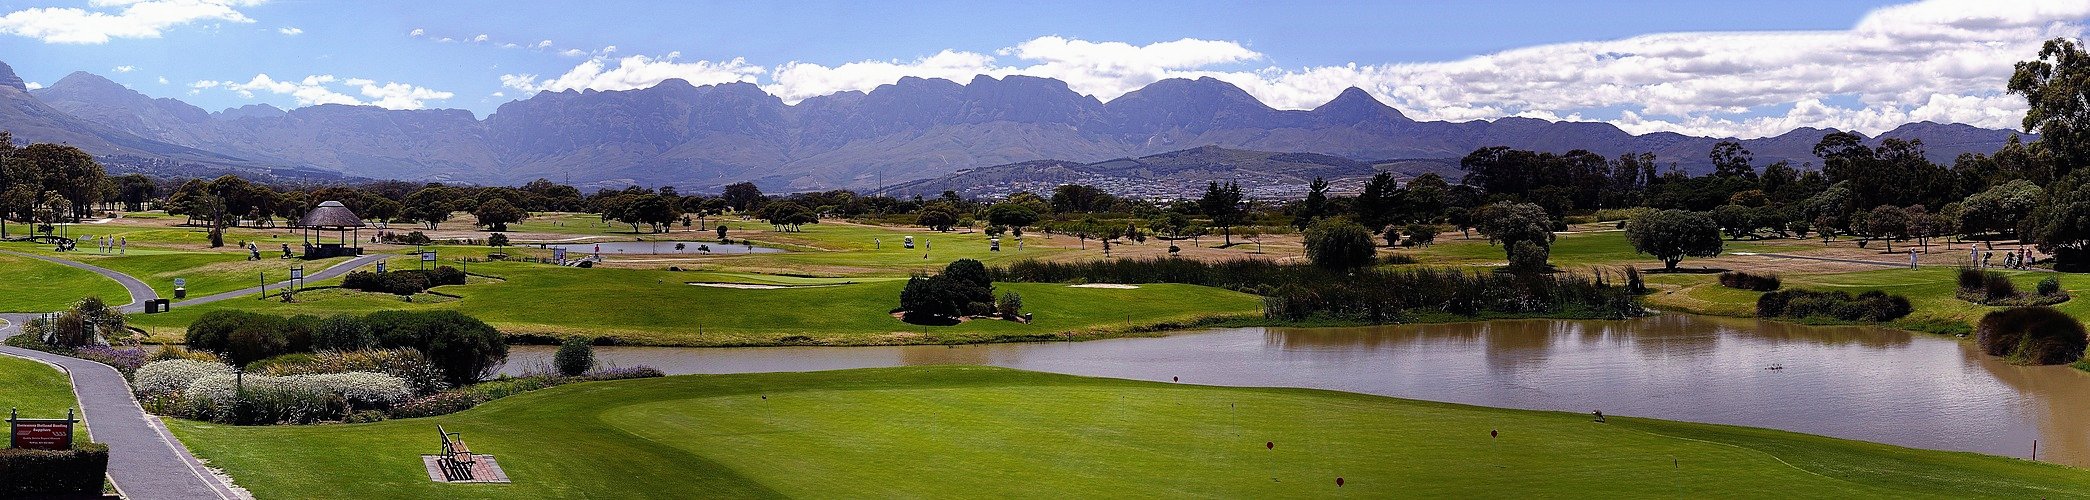 Golf Club Strand, Süd Afrika